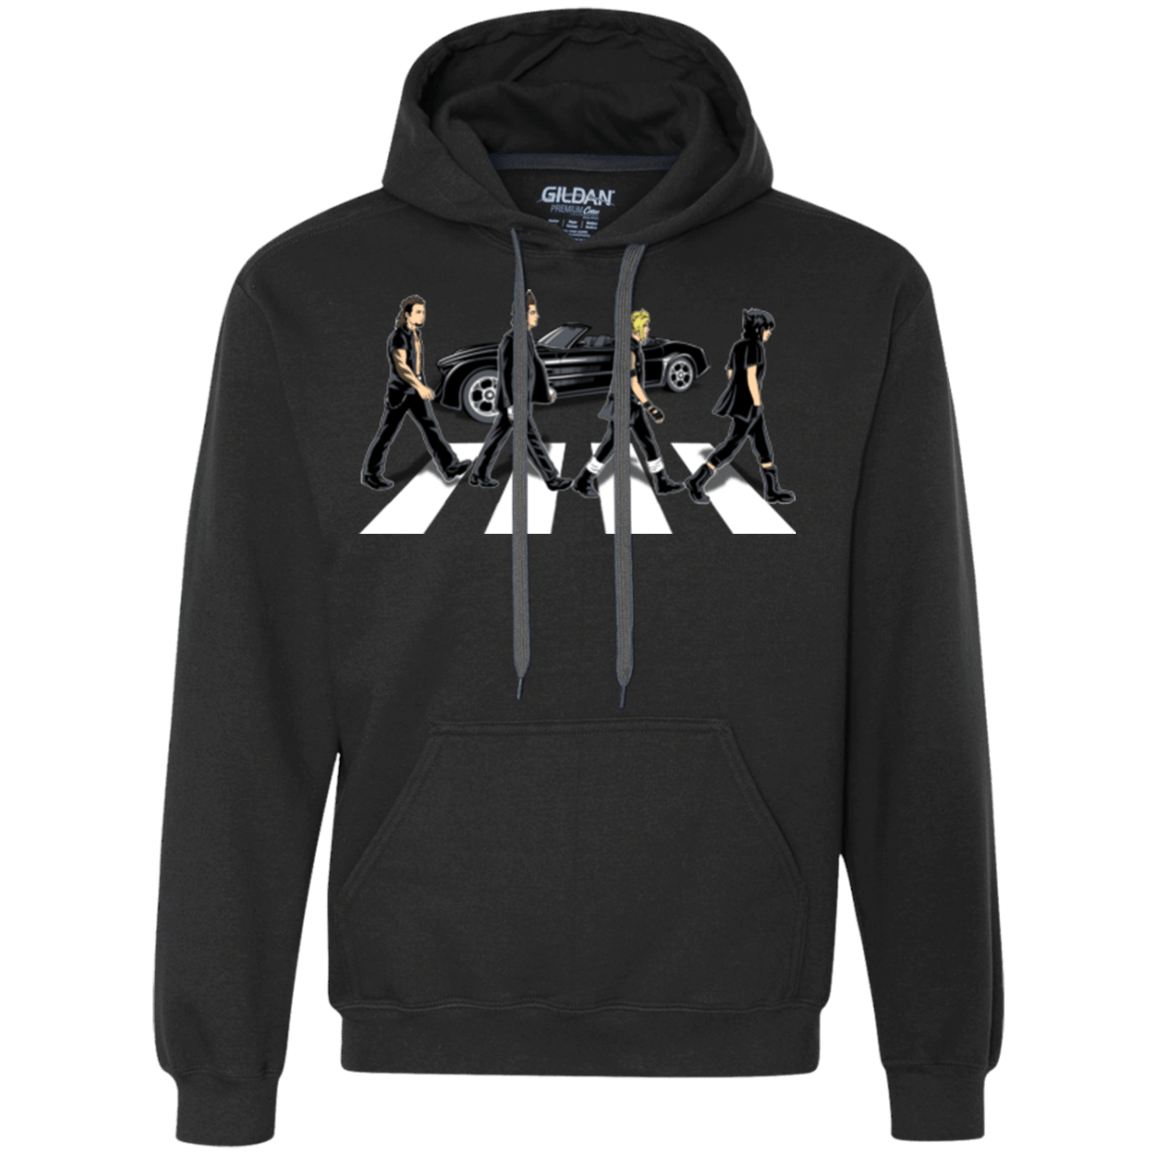 Sweatshirts Black / Small The Finals Premium Fleece Hoodie